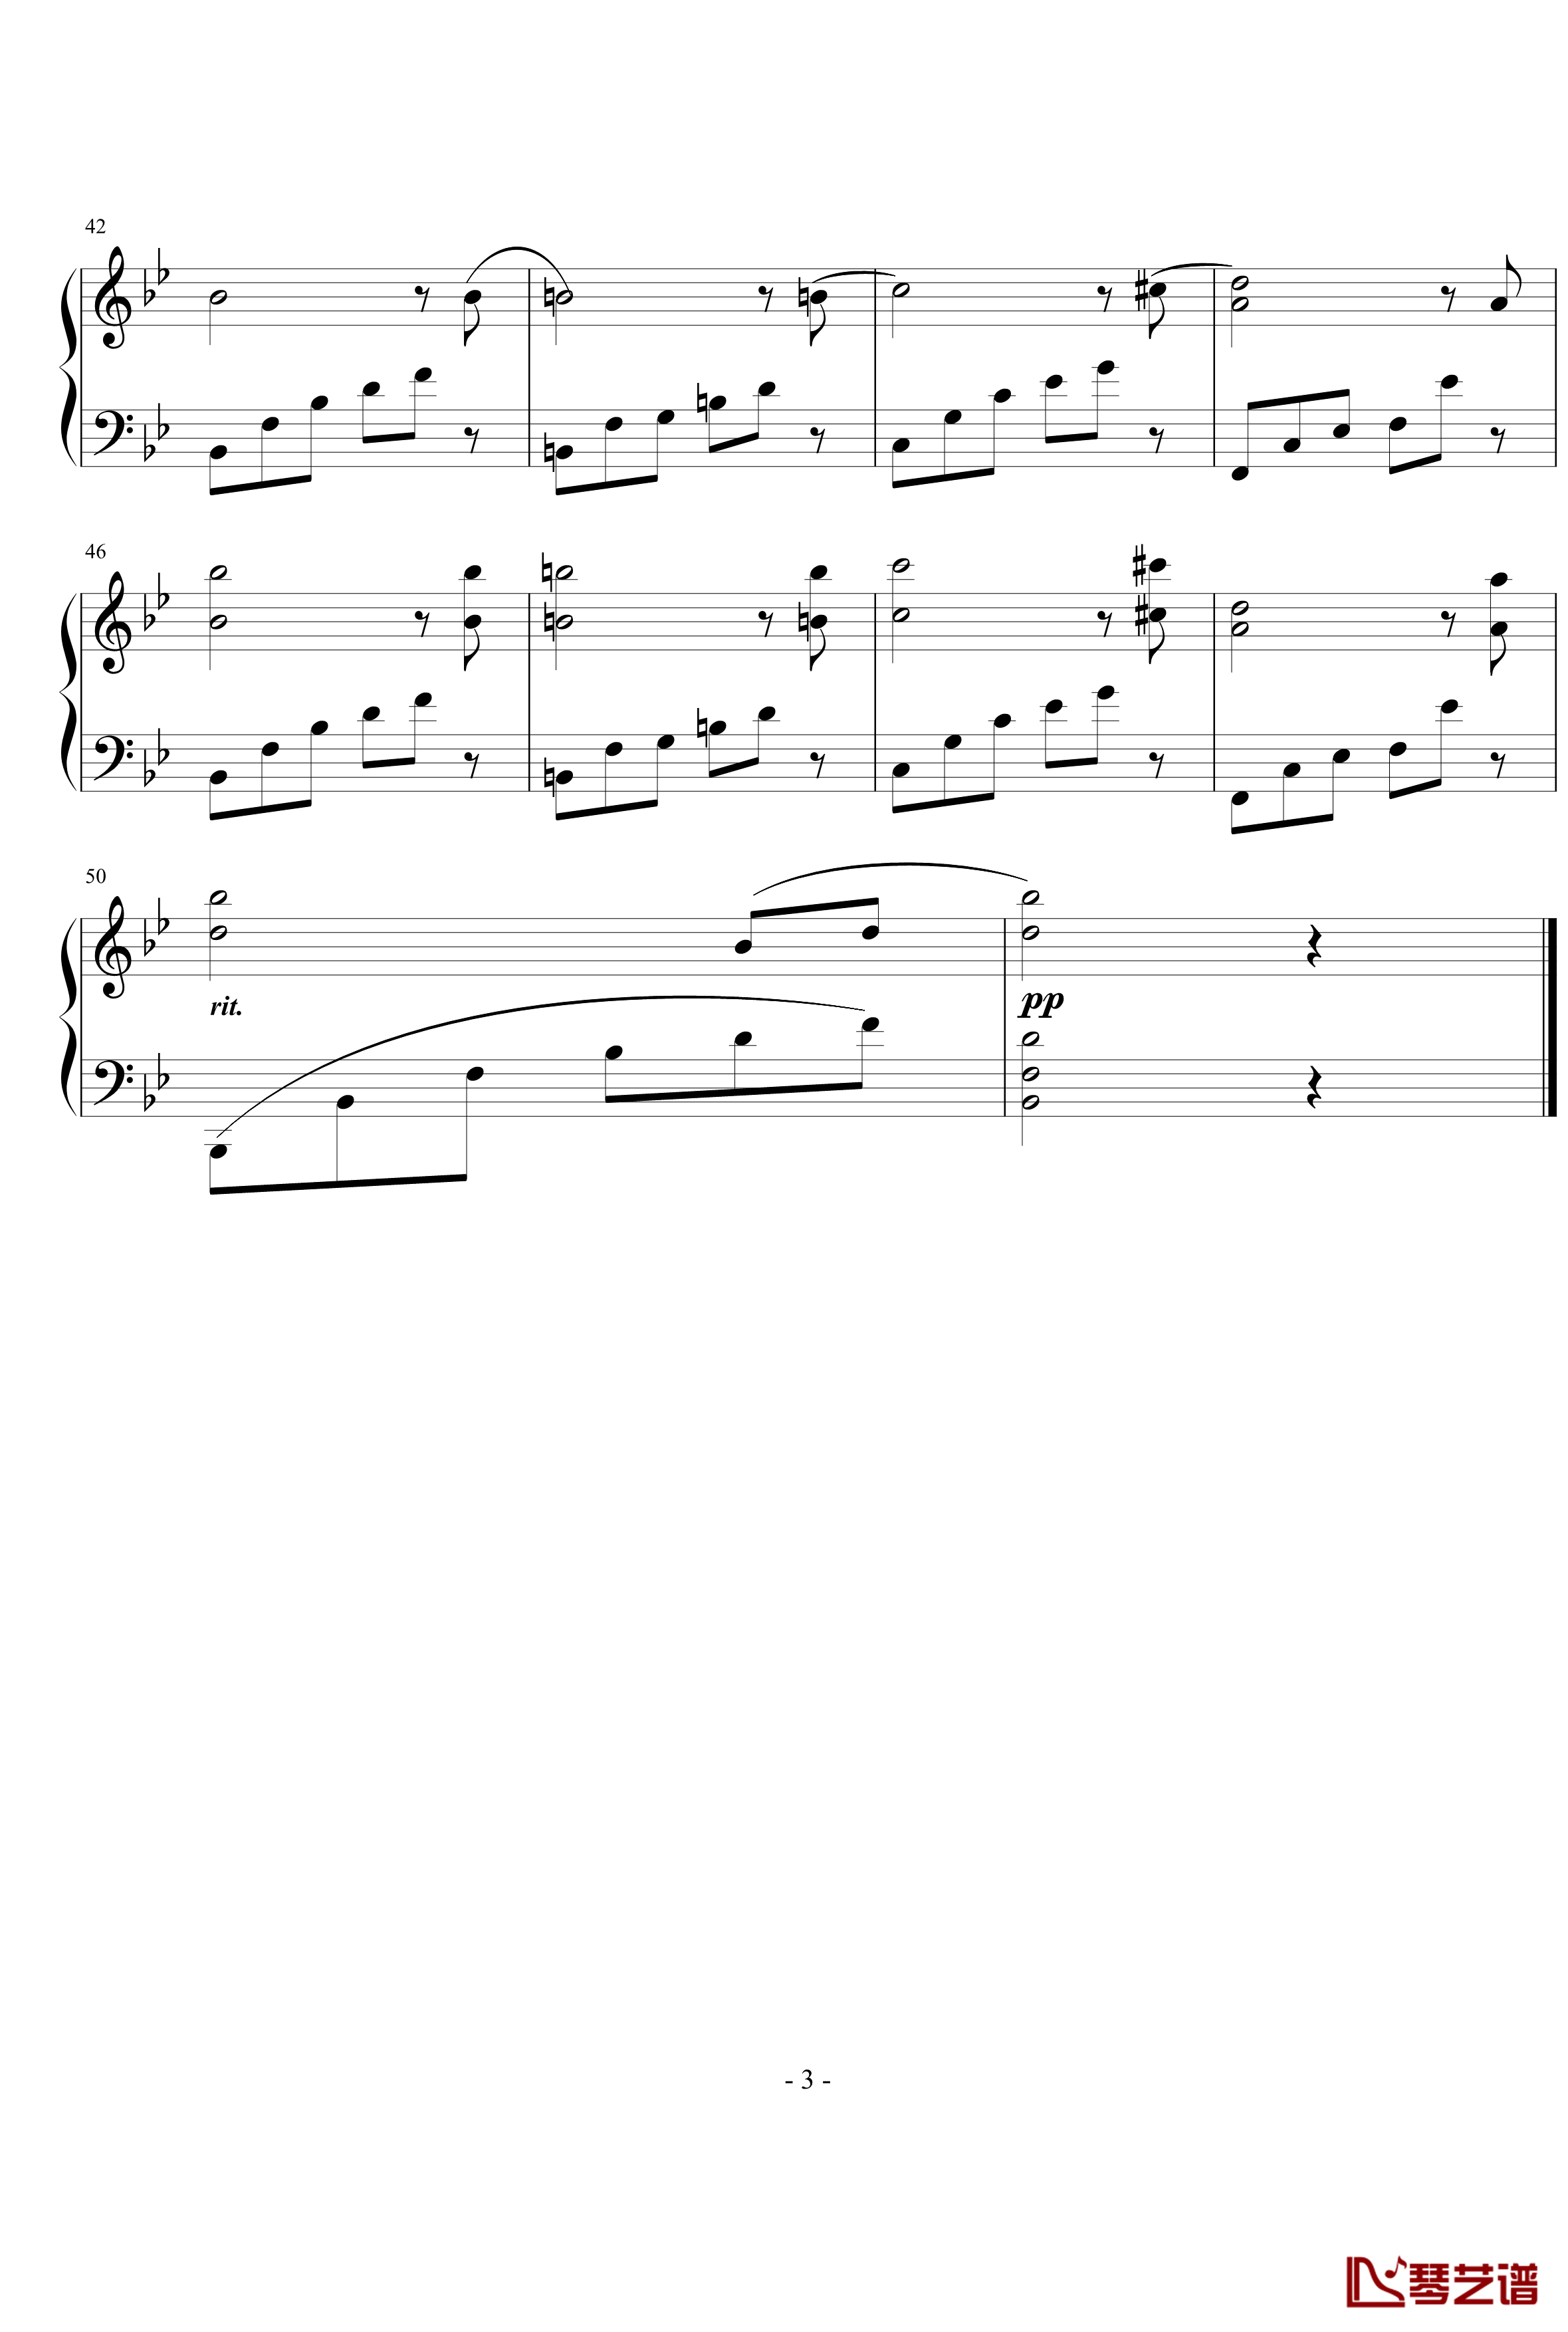 简短的练习曲钢琴谱-nyride3